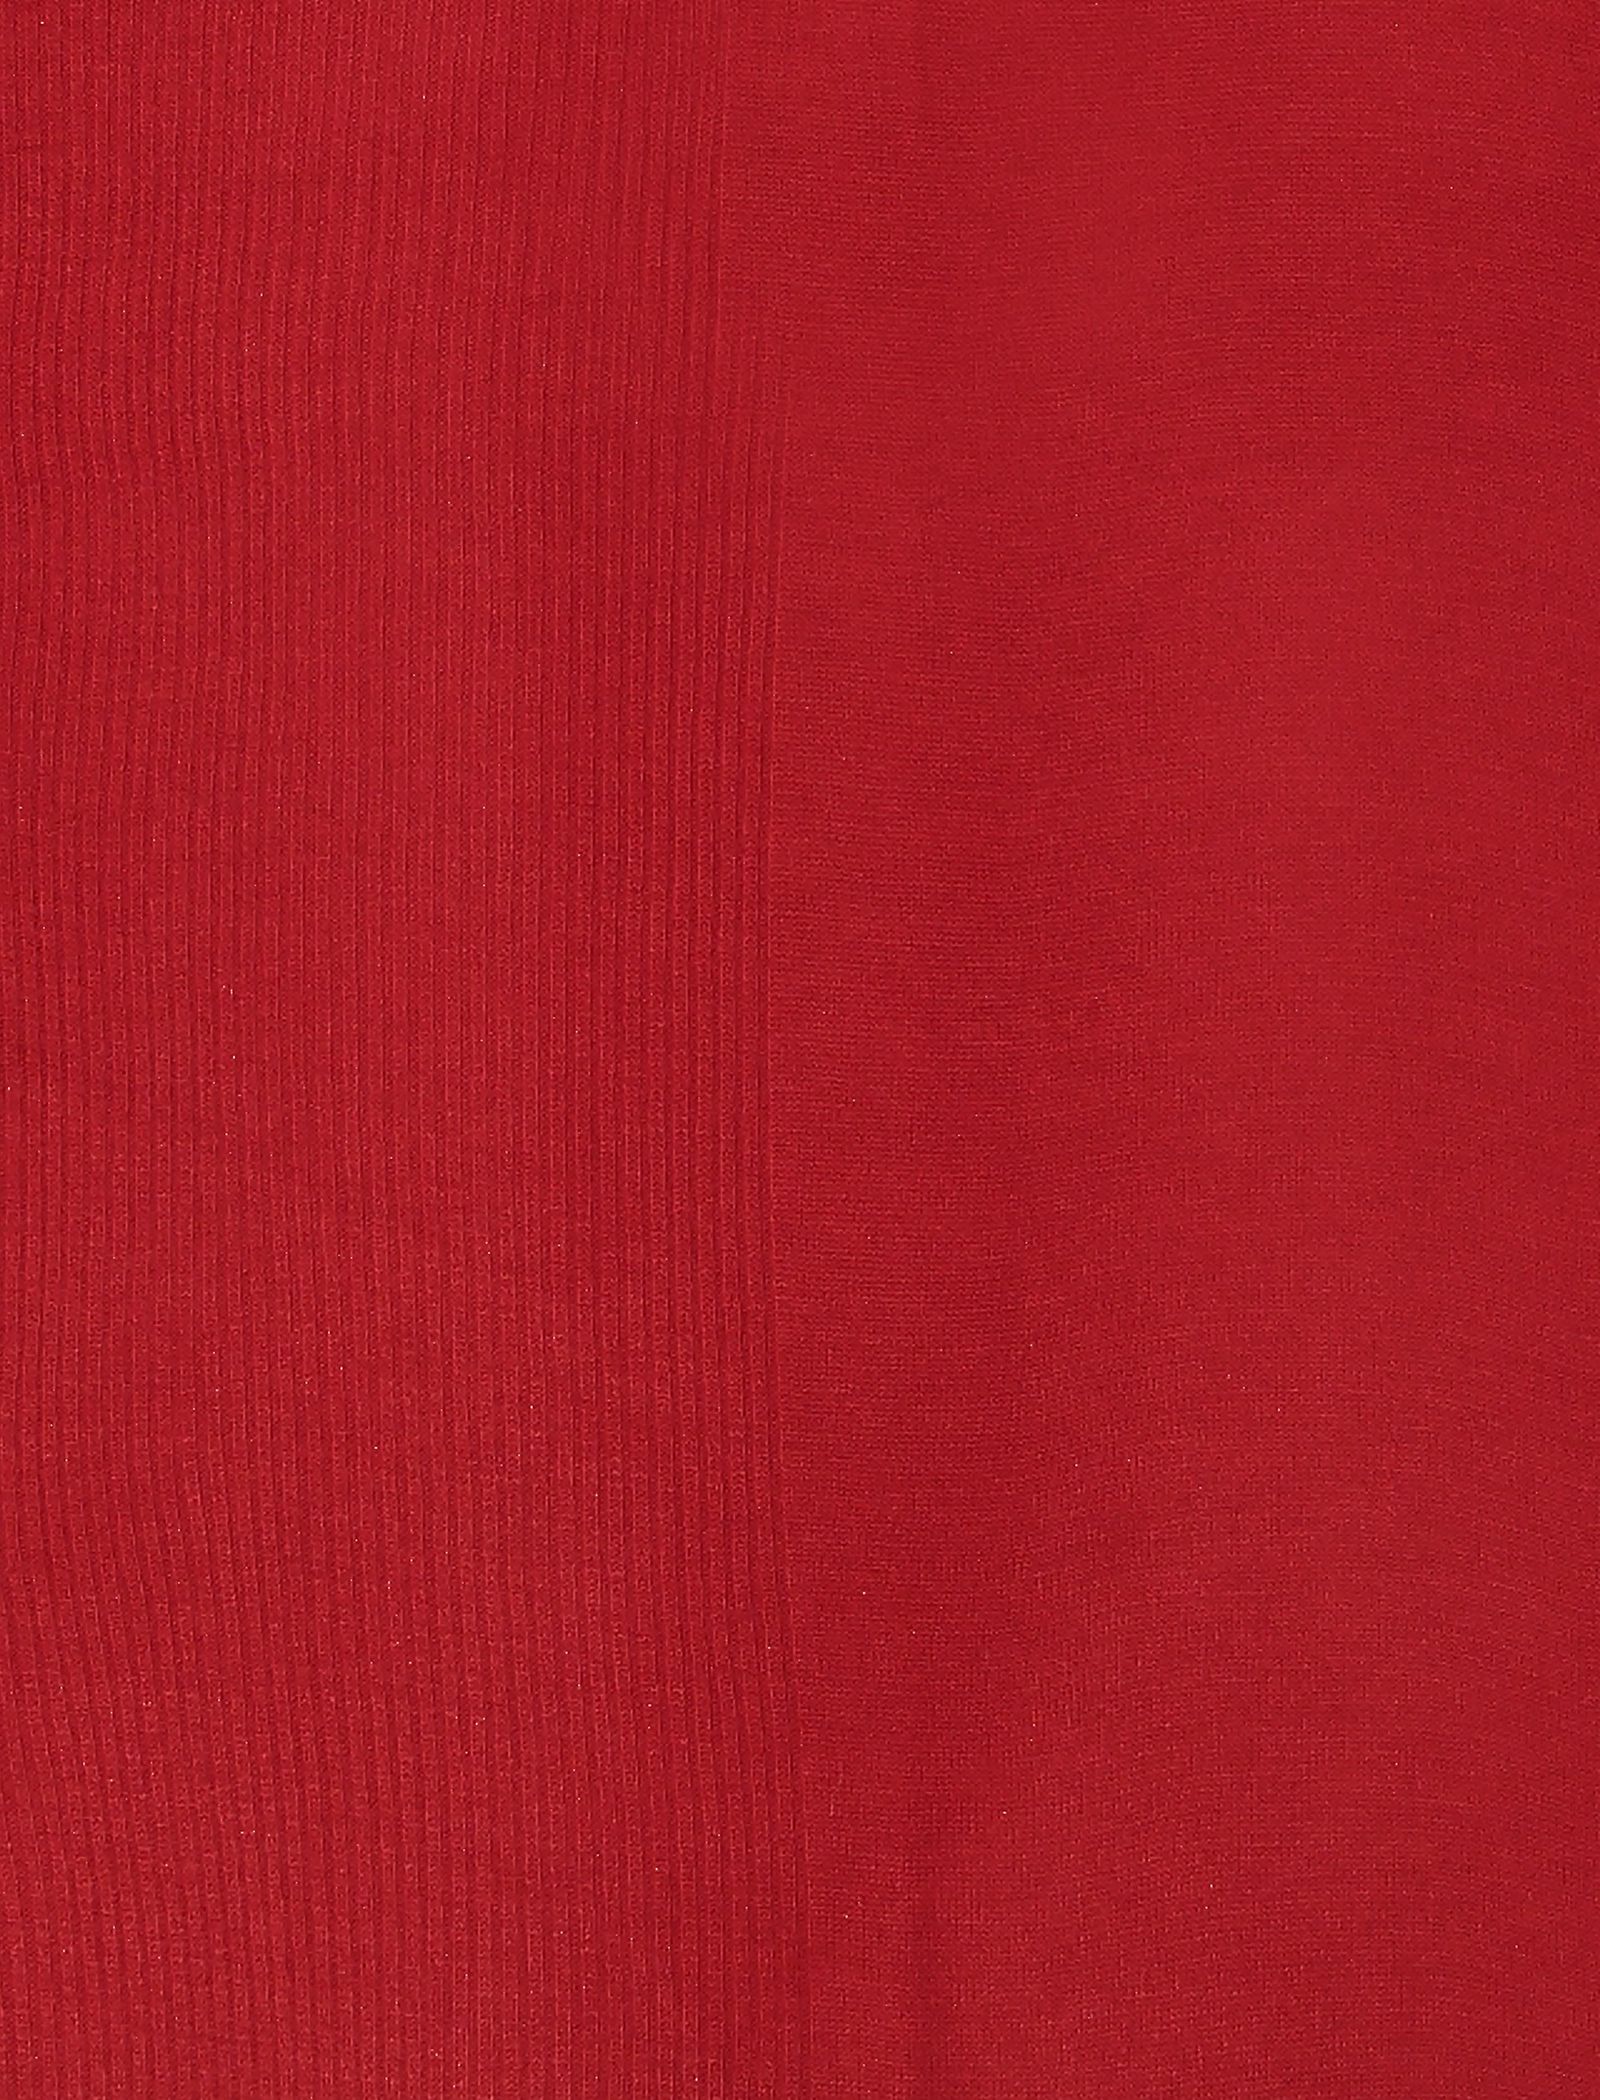 شال ساده زنانه - زیبو تک سایز - قرمز - 5